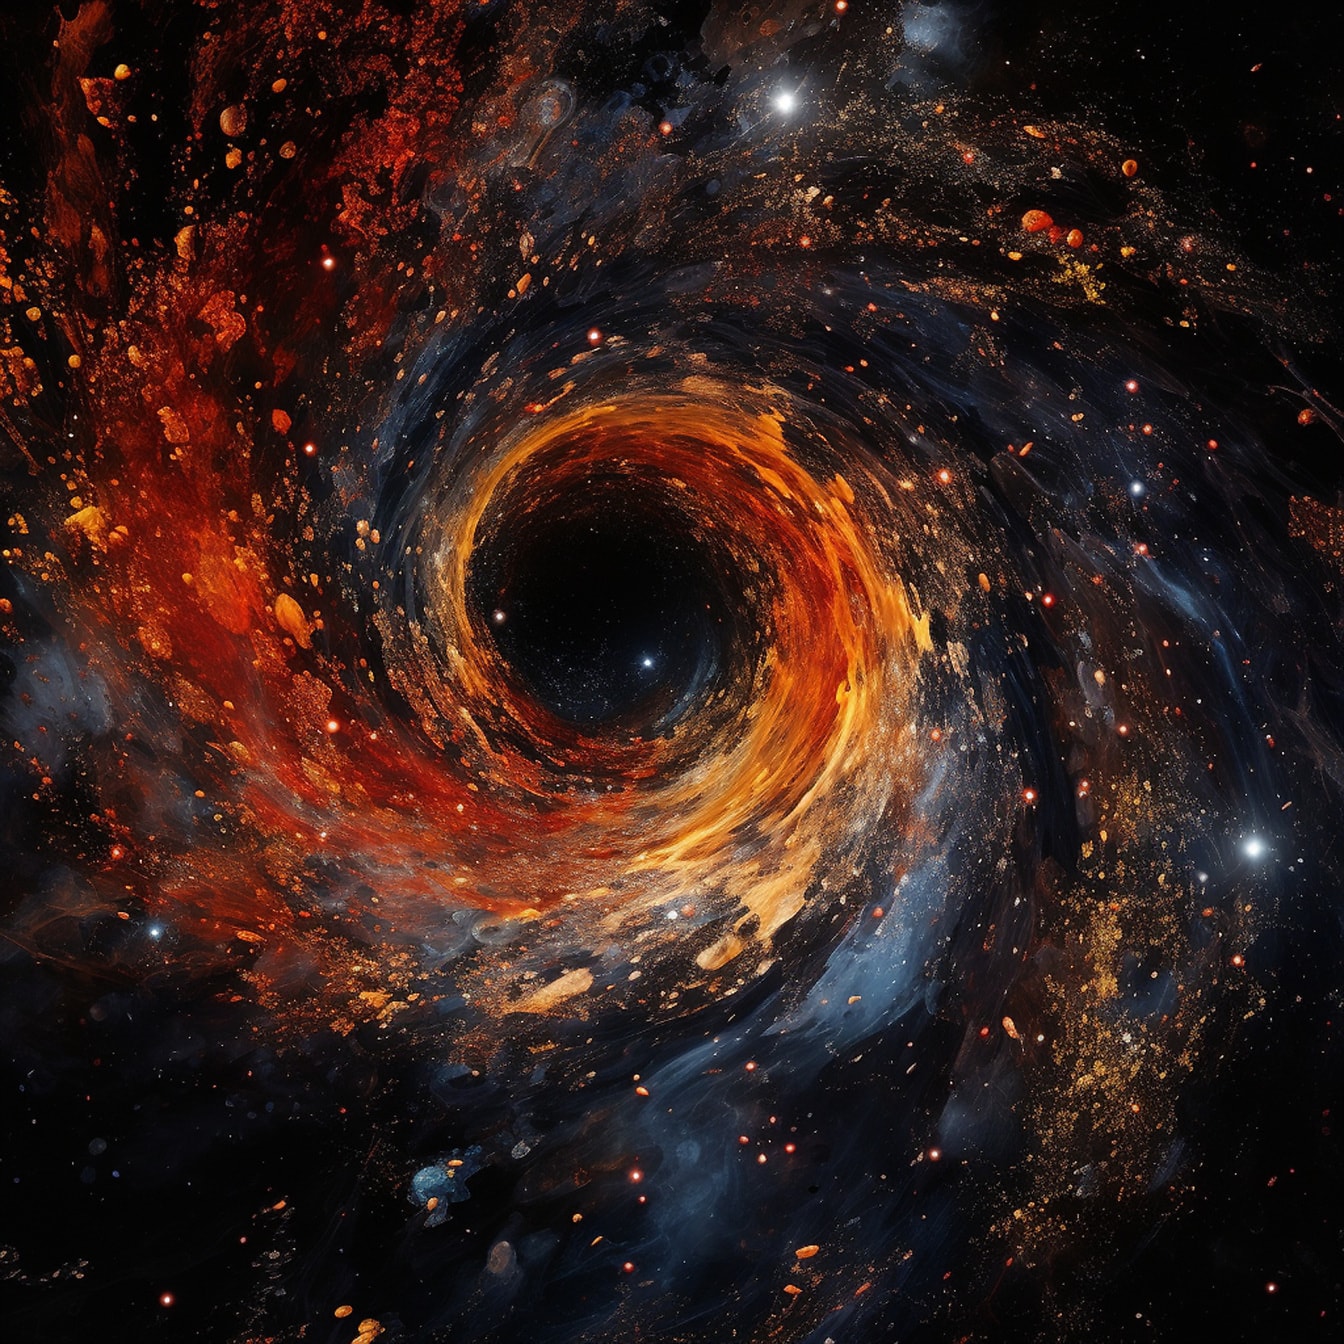 Orange gul eksplosion inde i sort hul i universet